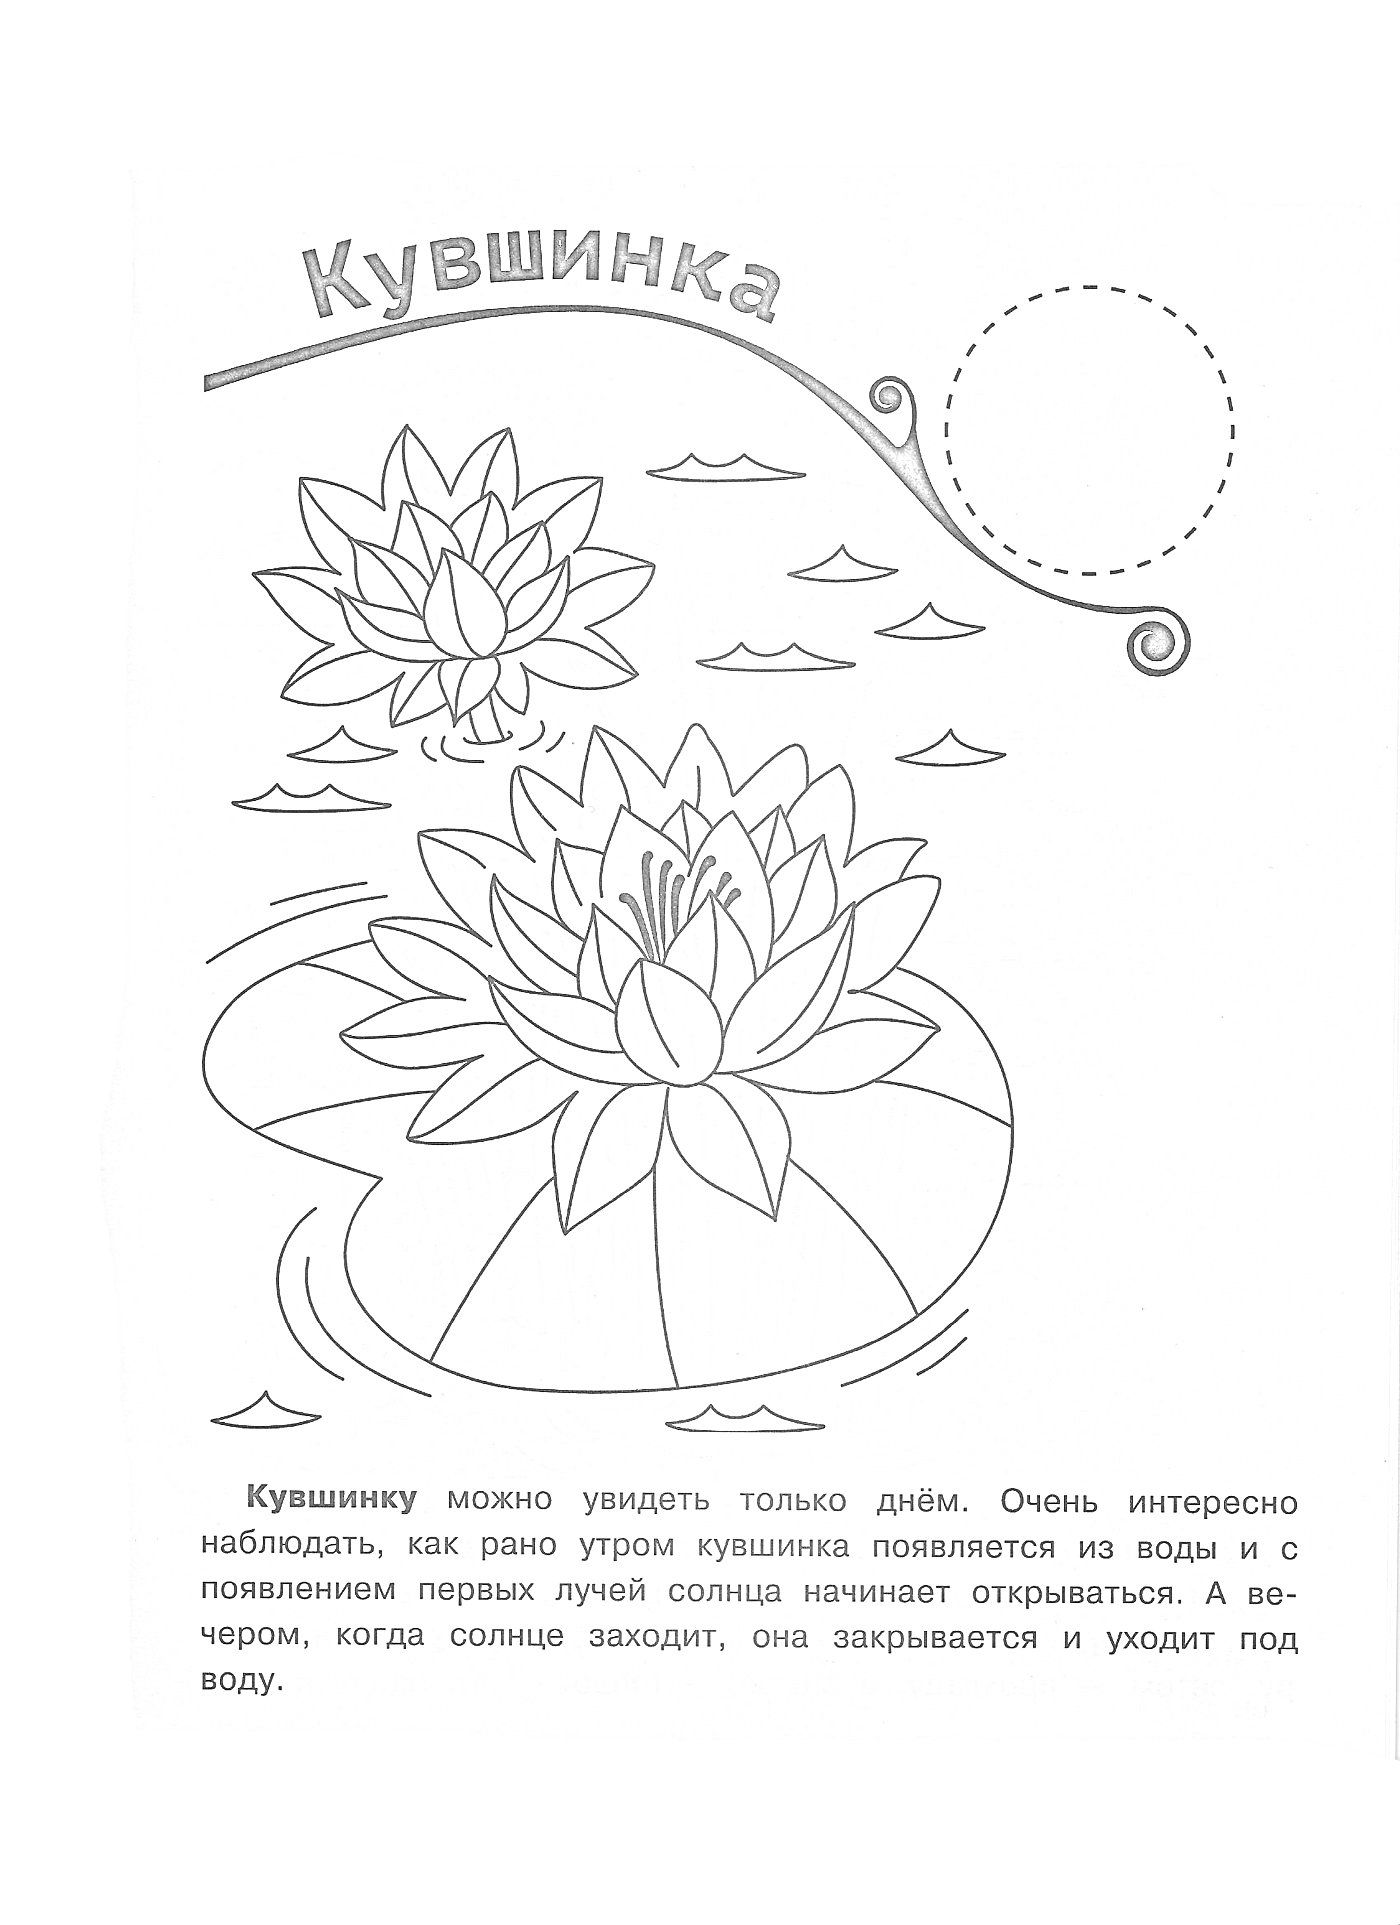 Раскраска Кувшинка на пруду с дополнительными элементами, такими как волны, листья и текст